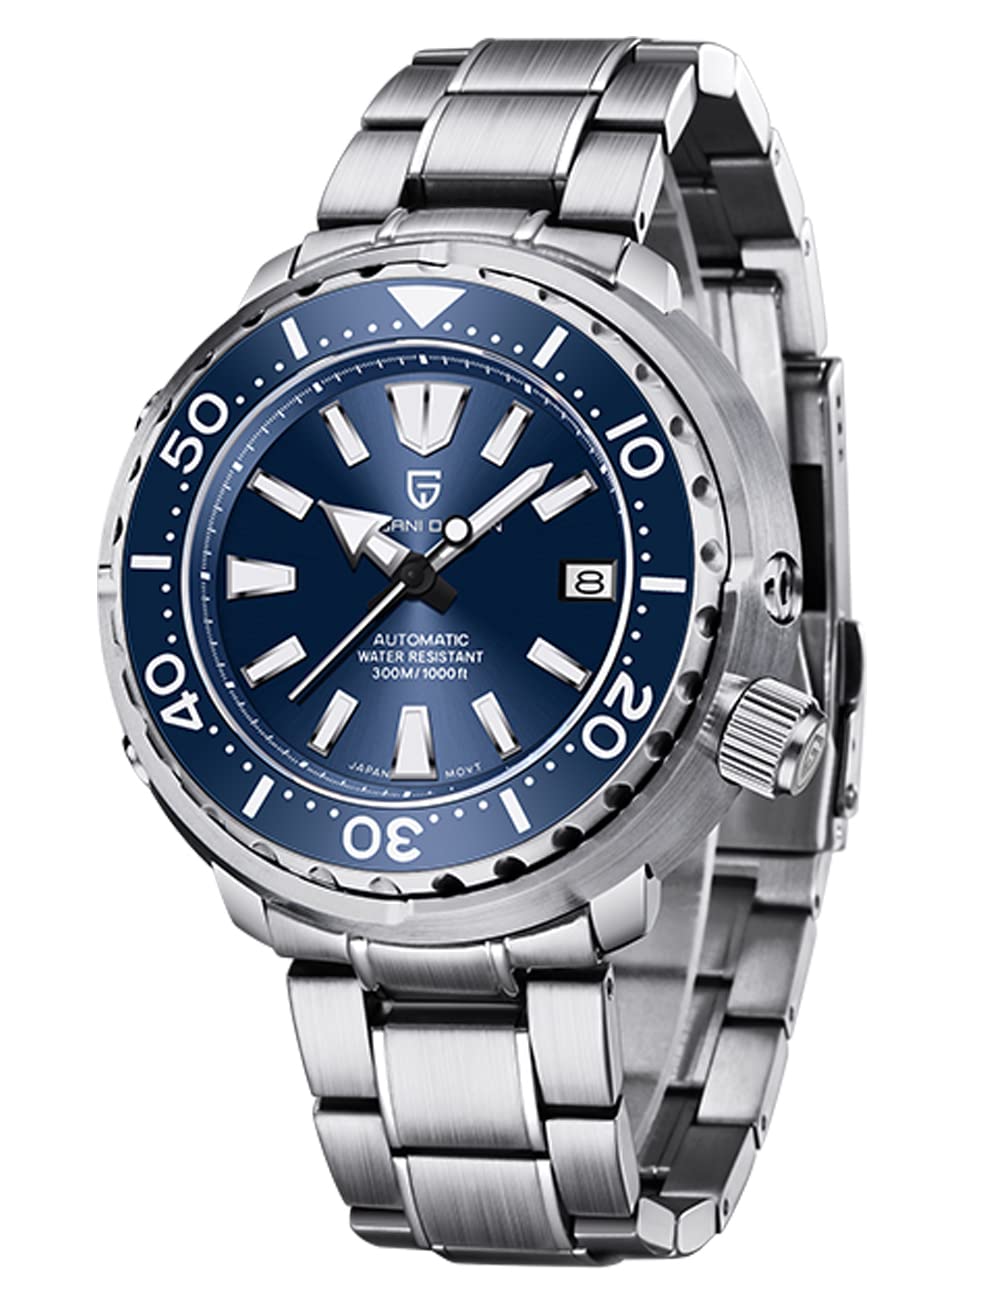 Pagani Design Watch Men Automatic Mechanical Wrist Watch Fashion Sports Diving Watch 300ATM Waterproof Luminous Watch Men